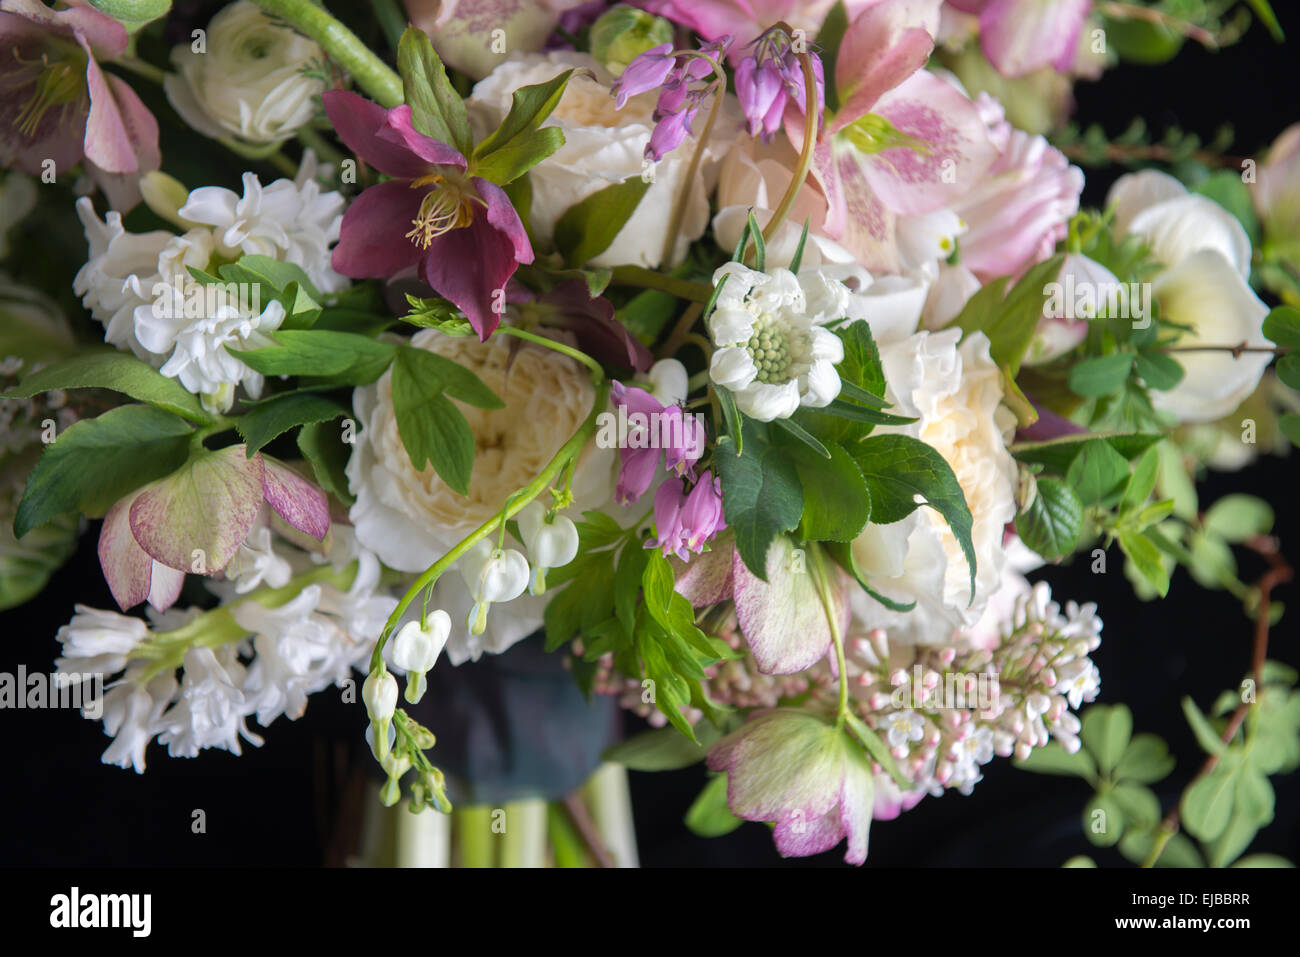 Reichlich Blumenstrauß von blühenden Frühlingsblumen wie Ranunkeln Nieswurz Papagei Tulpe Tulipa und weißes Tränendes Herz Stockfoto